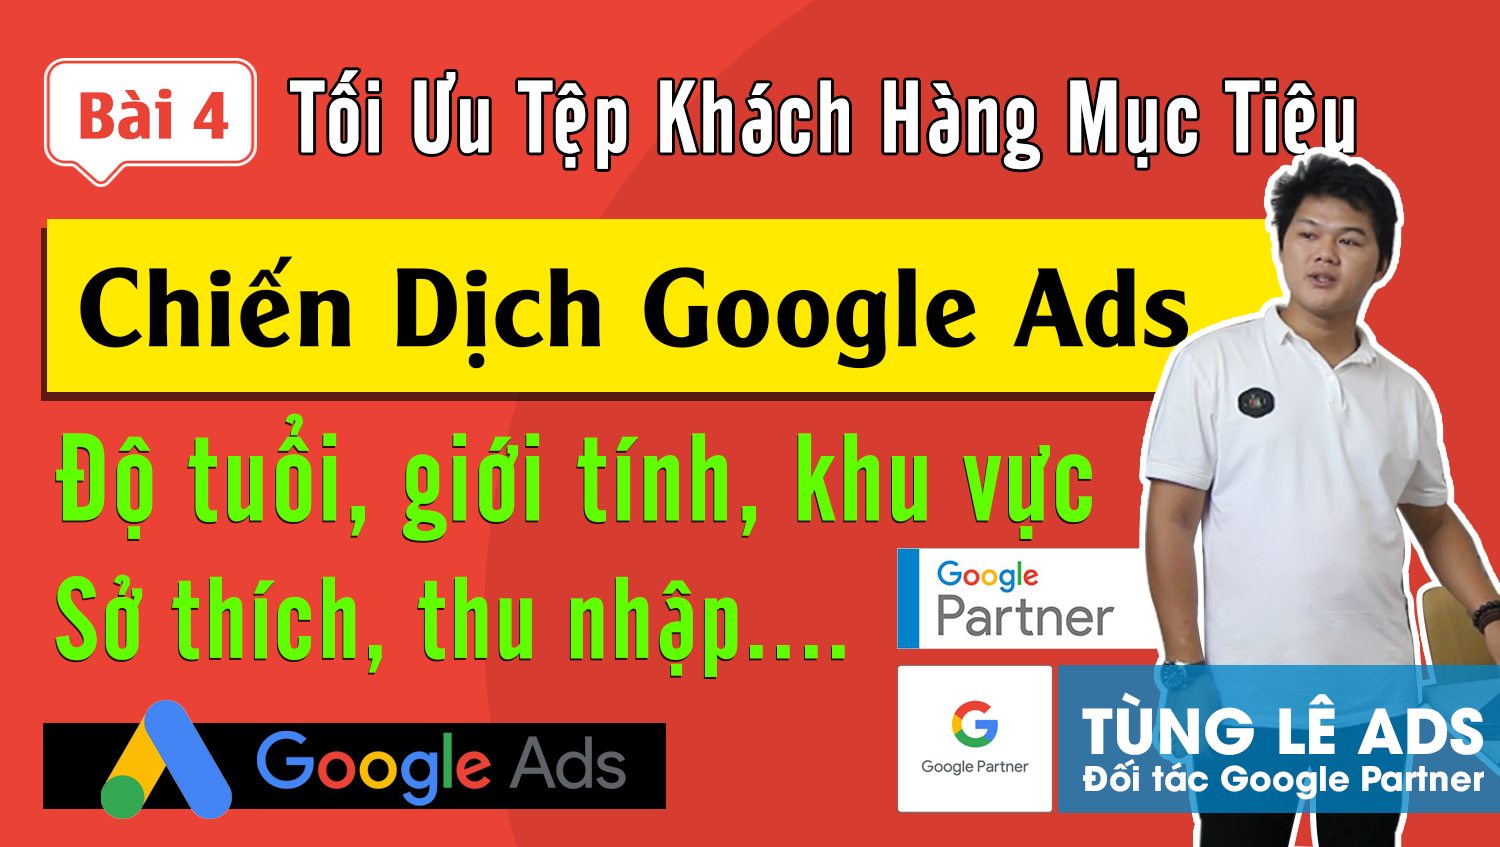 Xác định chân dung khách hàng mục tiêu cho toàn bộ chiến dịch Google Ads #4